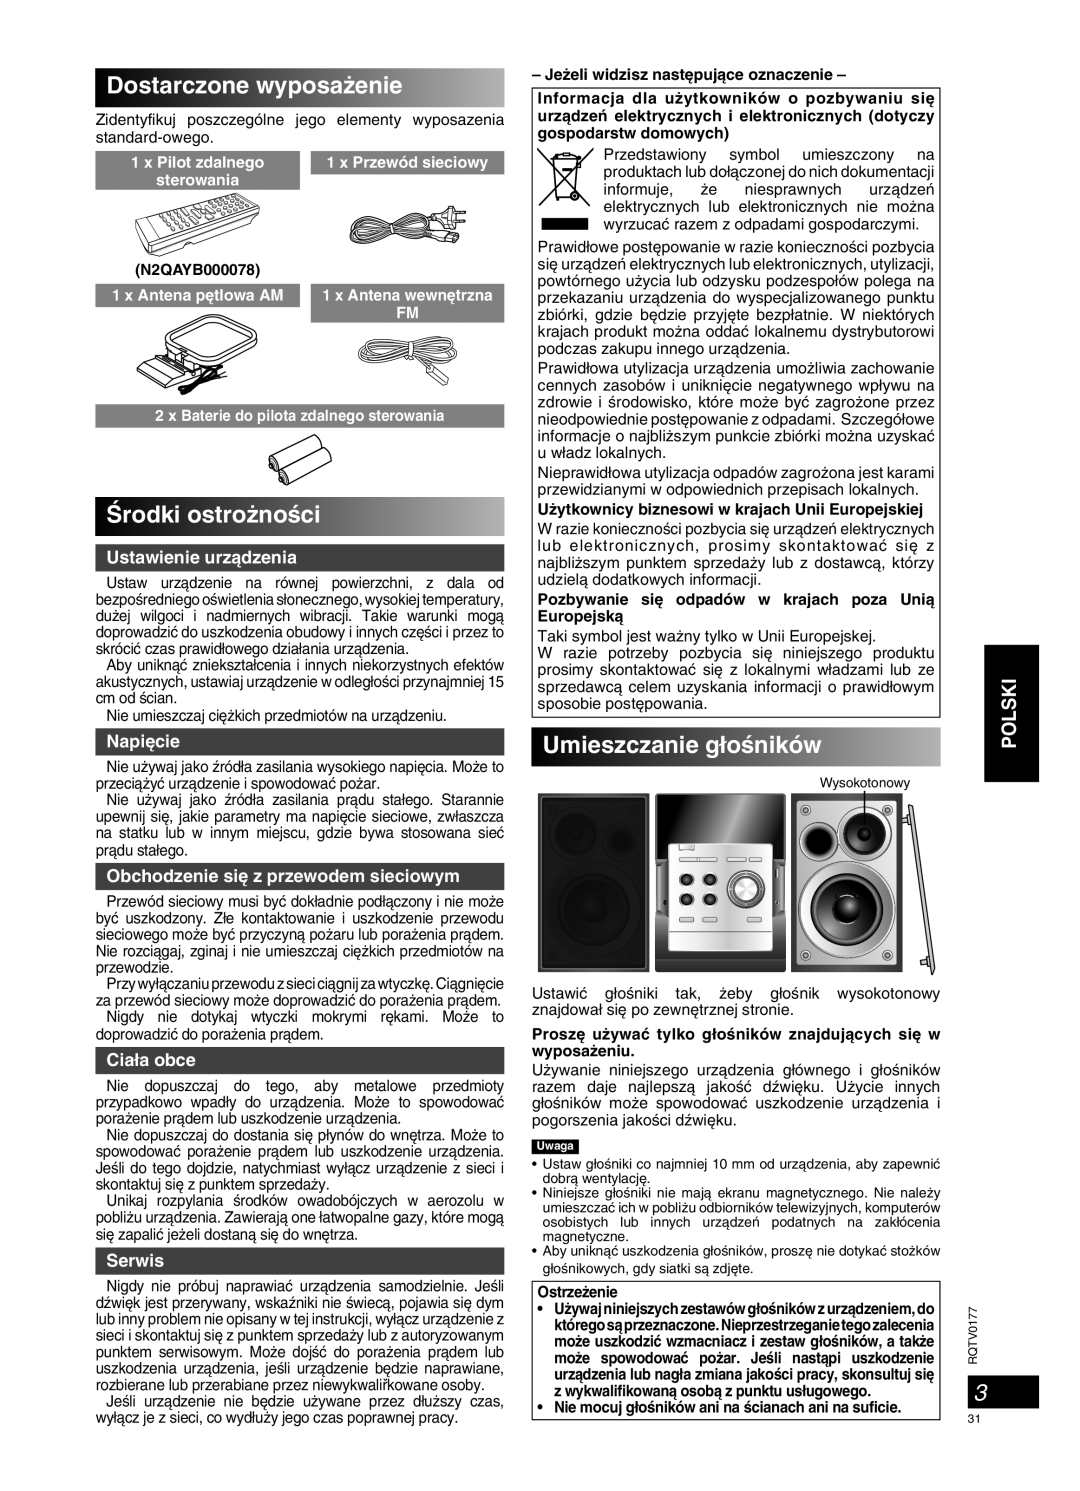 Panasonic SC-PM45 manual Dostarczone wyposa˝enie, Ârodki ostro˝noÊci, Umieszczanie g∏oÊników, Polski, Ustawienie urzàdzenia 